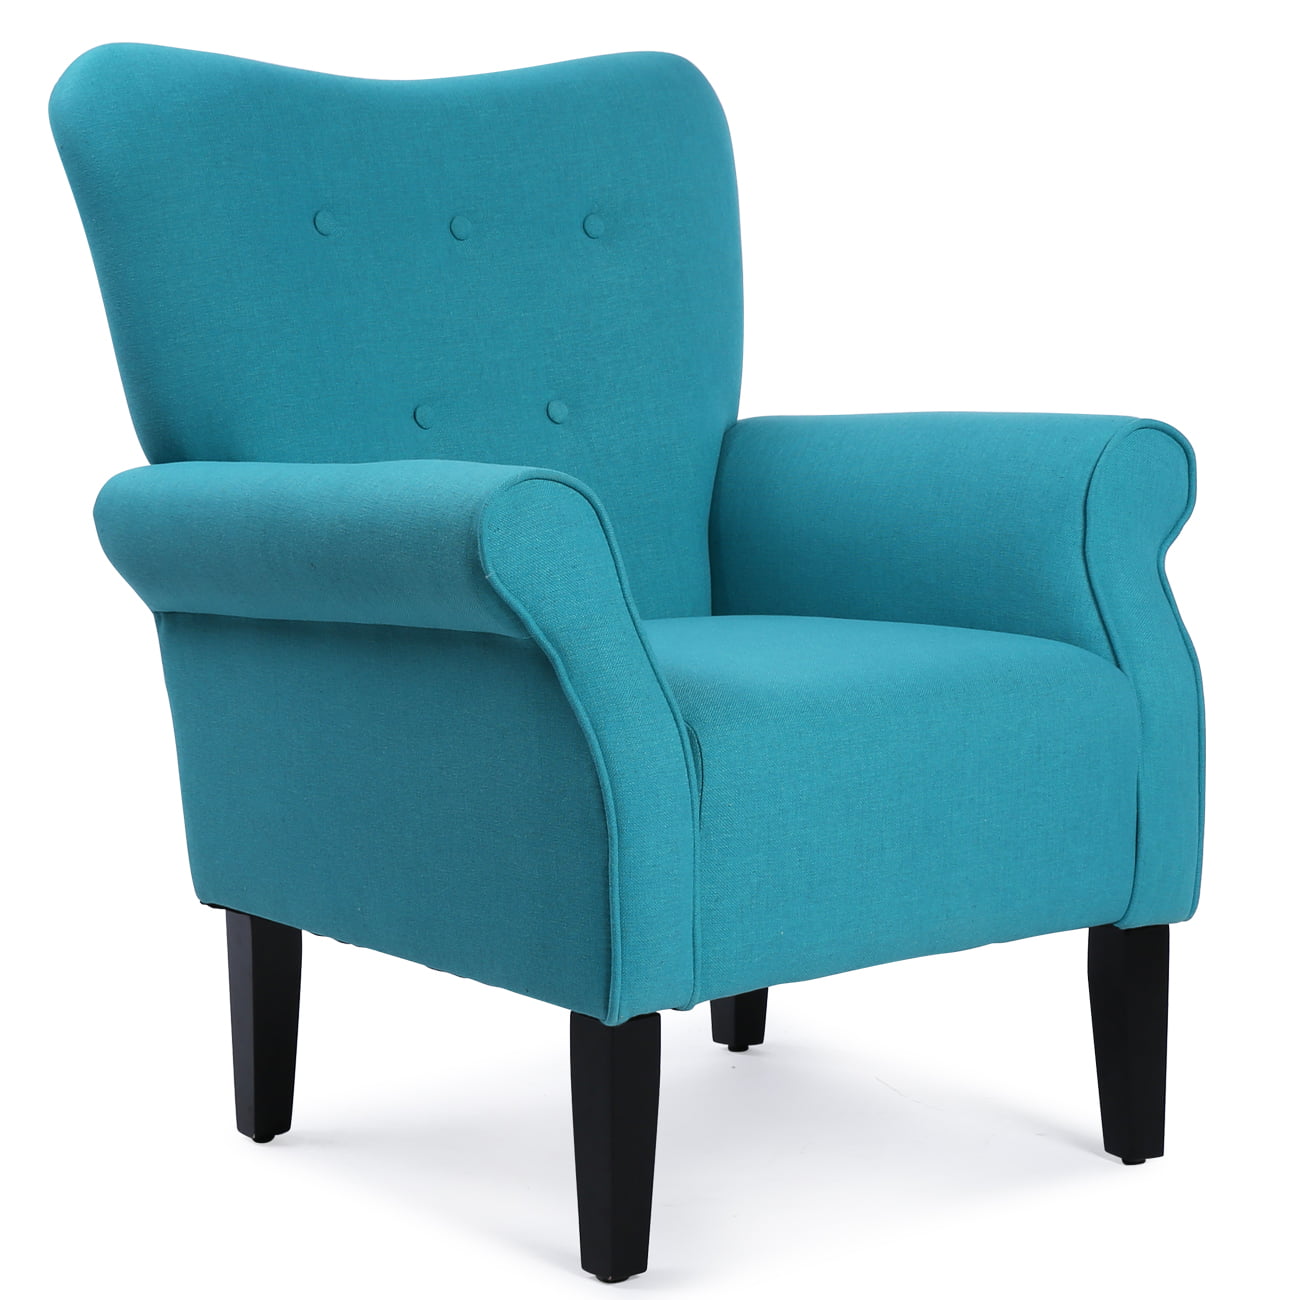 Belleze Living Room Armchair Linen Armrest Modern Accent